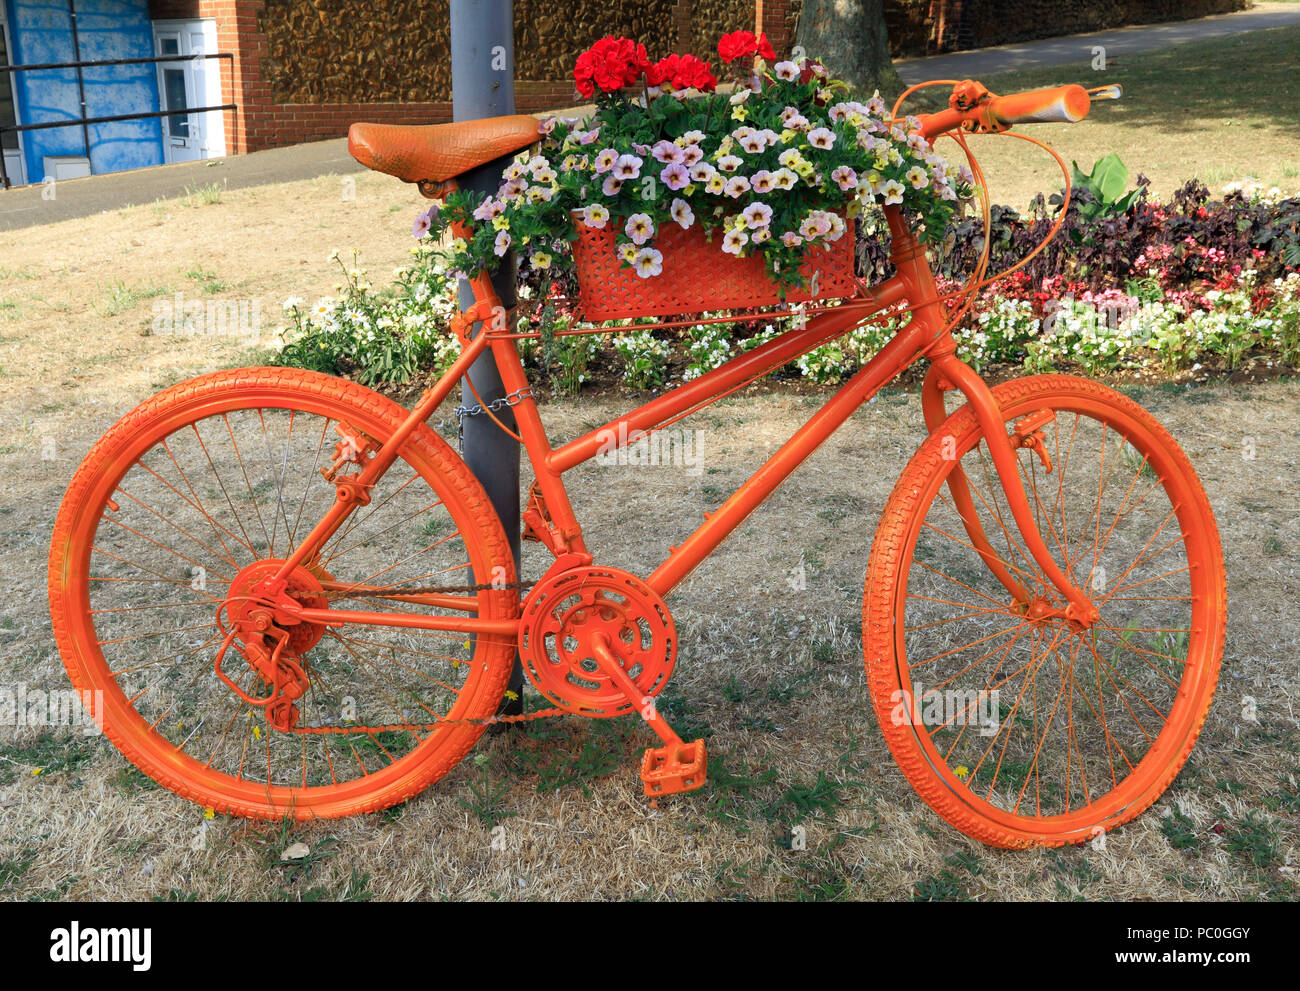 Hunstanton in fiore, di colore arancio spruzzata bicicletta, insolito, contenitore di lettiera, piante e fiori Foto Stock